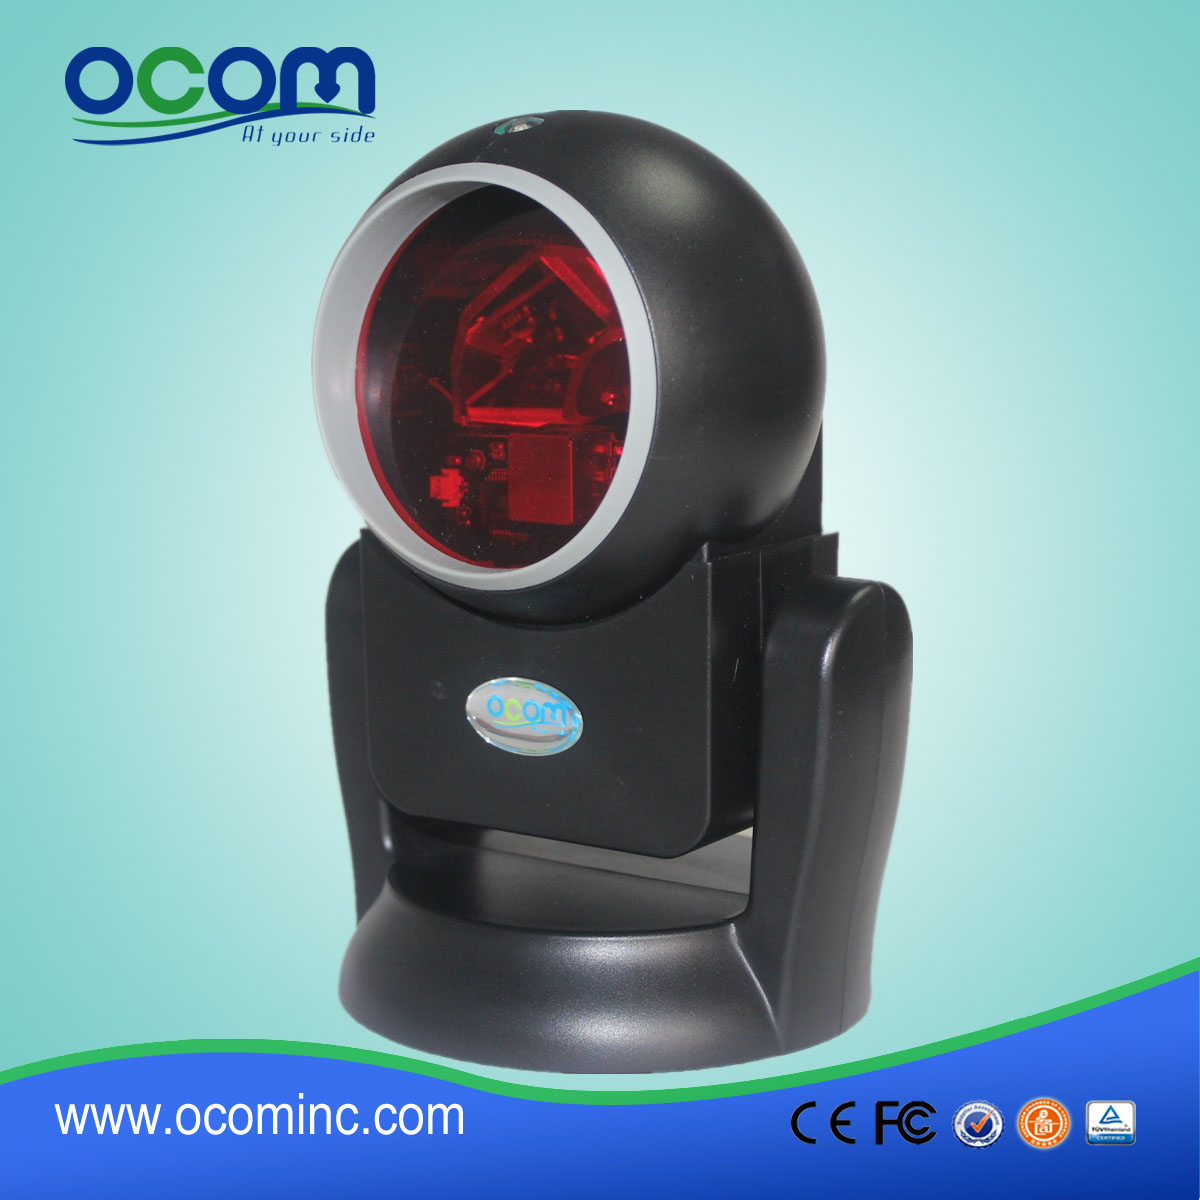 中国制造的台式机全方位激光条码扫描器OCBS-T007